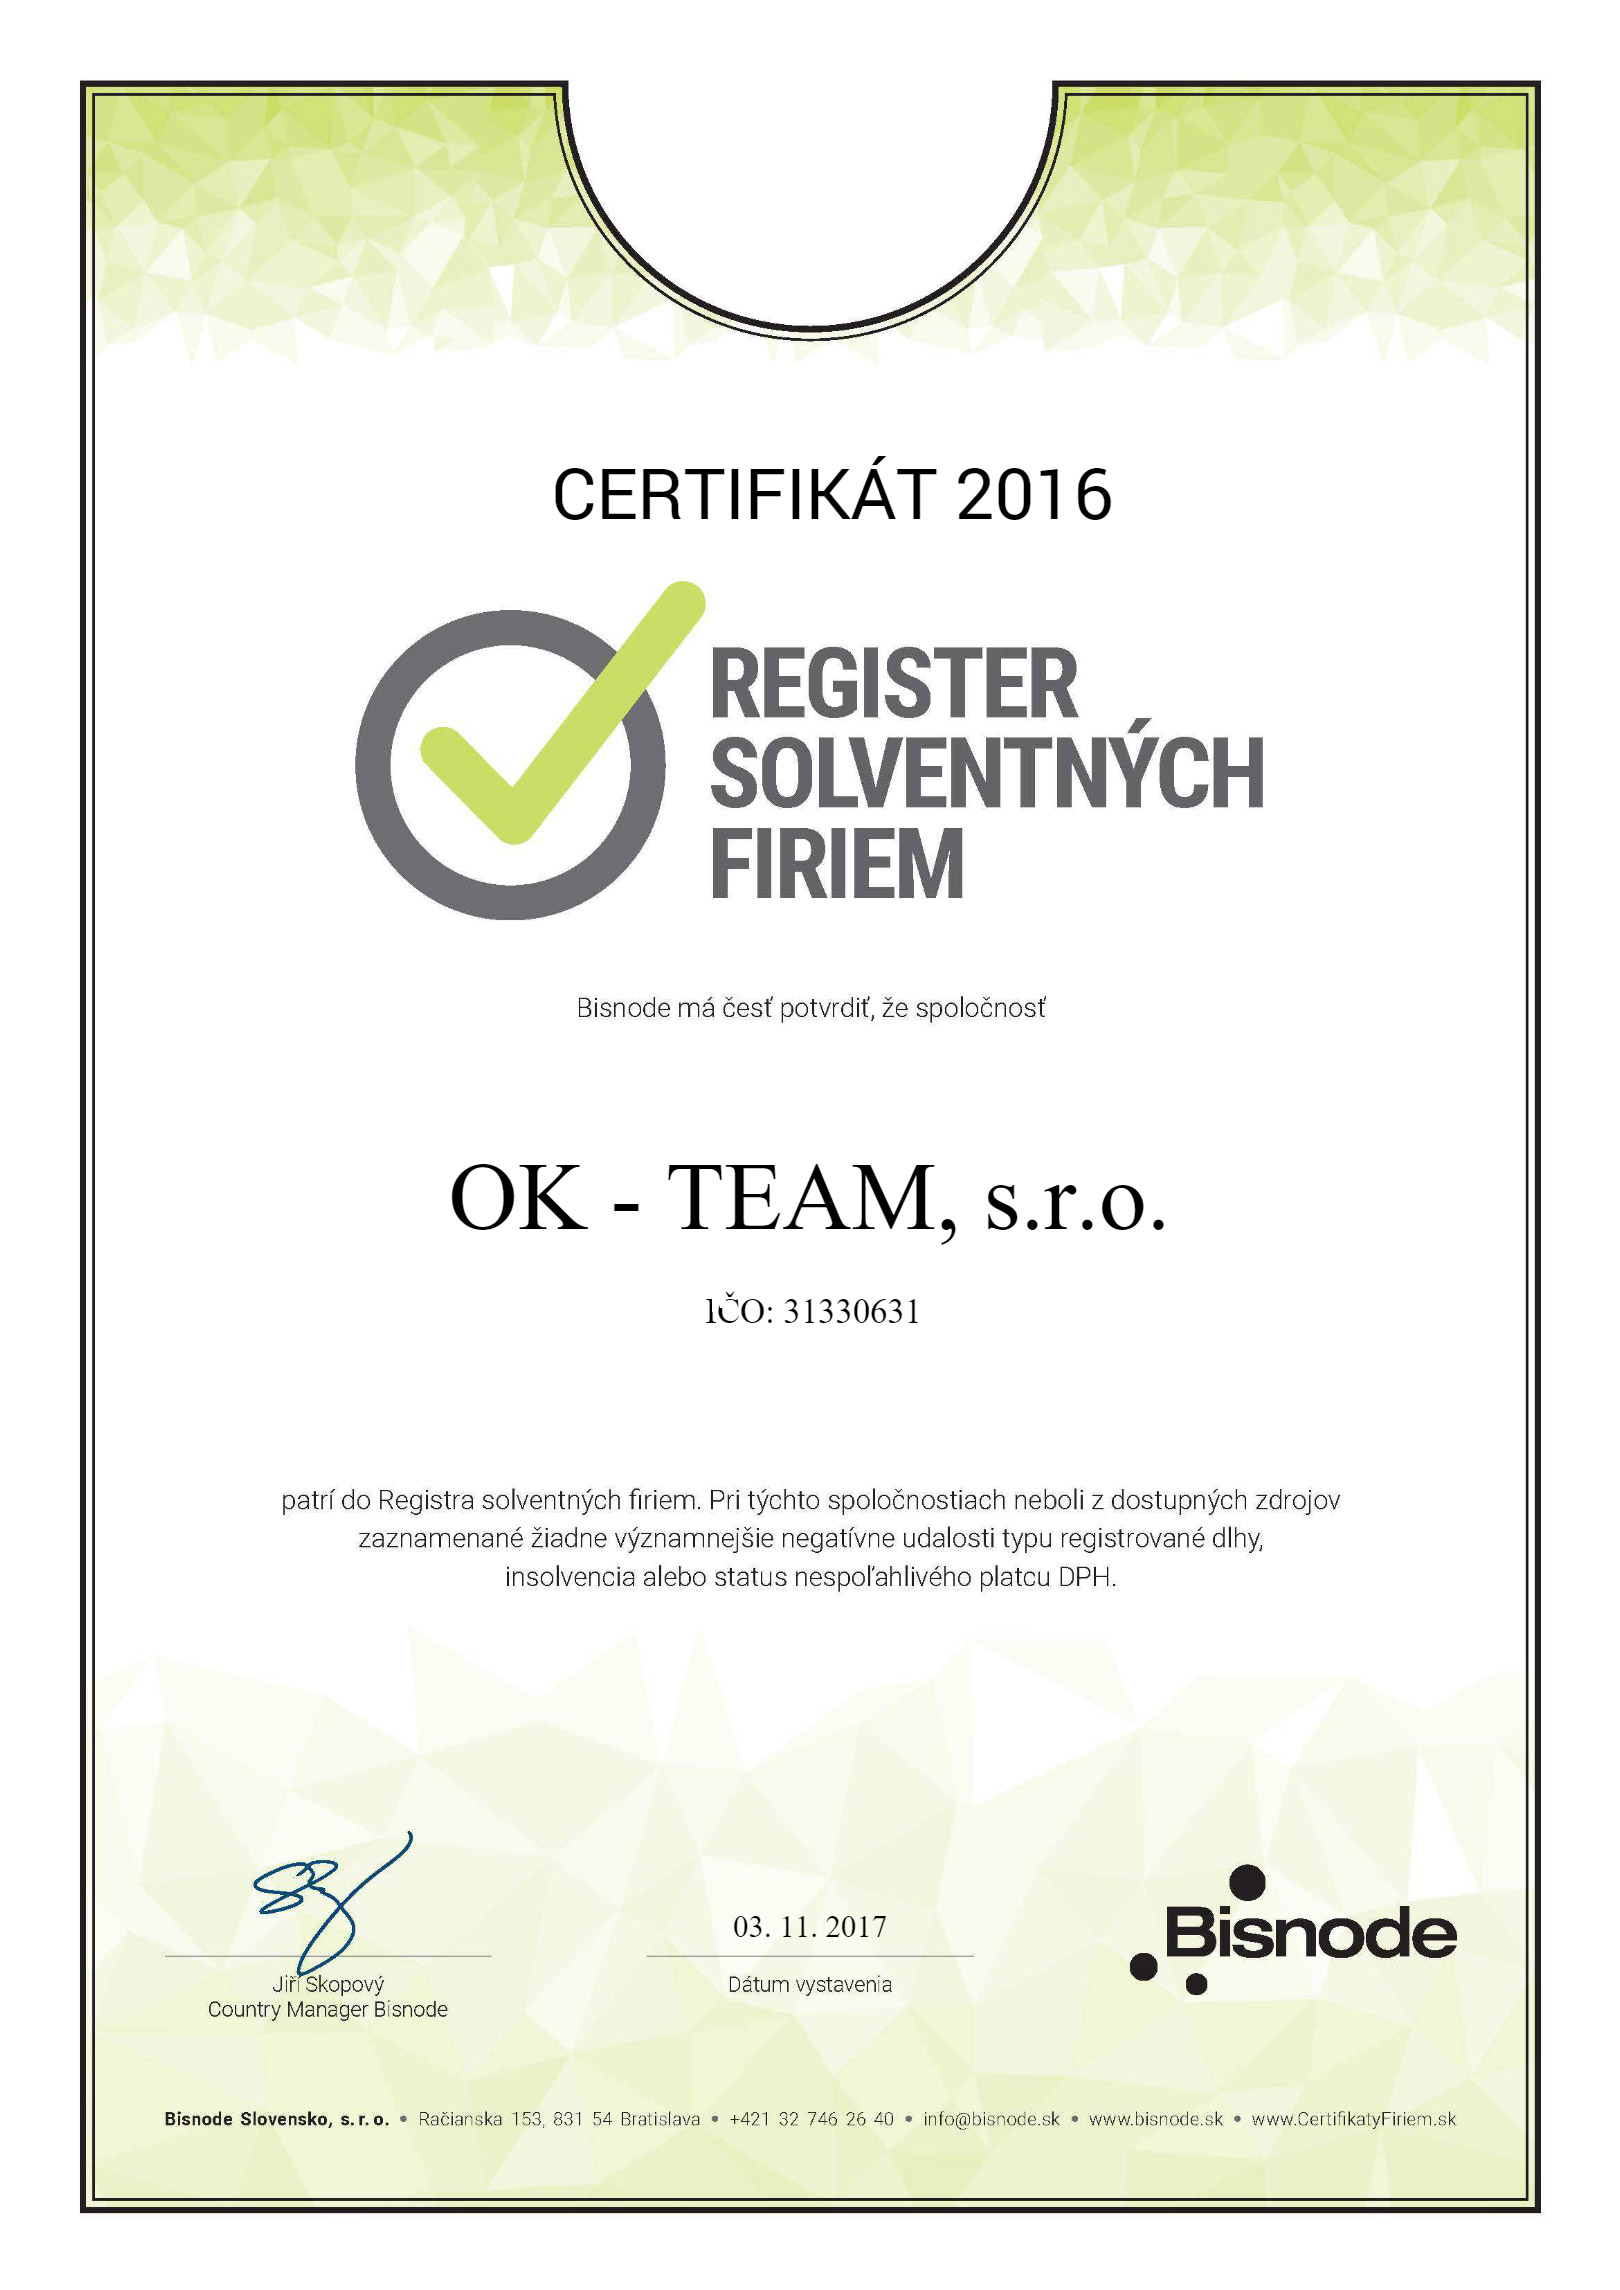 Certifikát Bisnode 2016